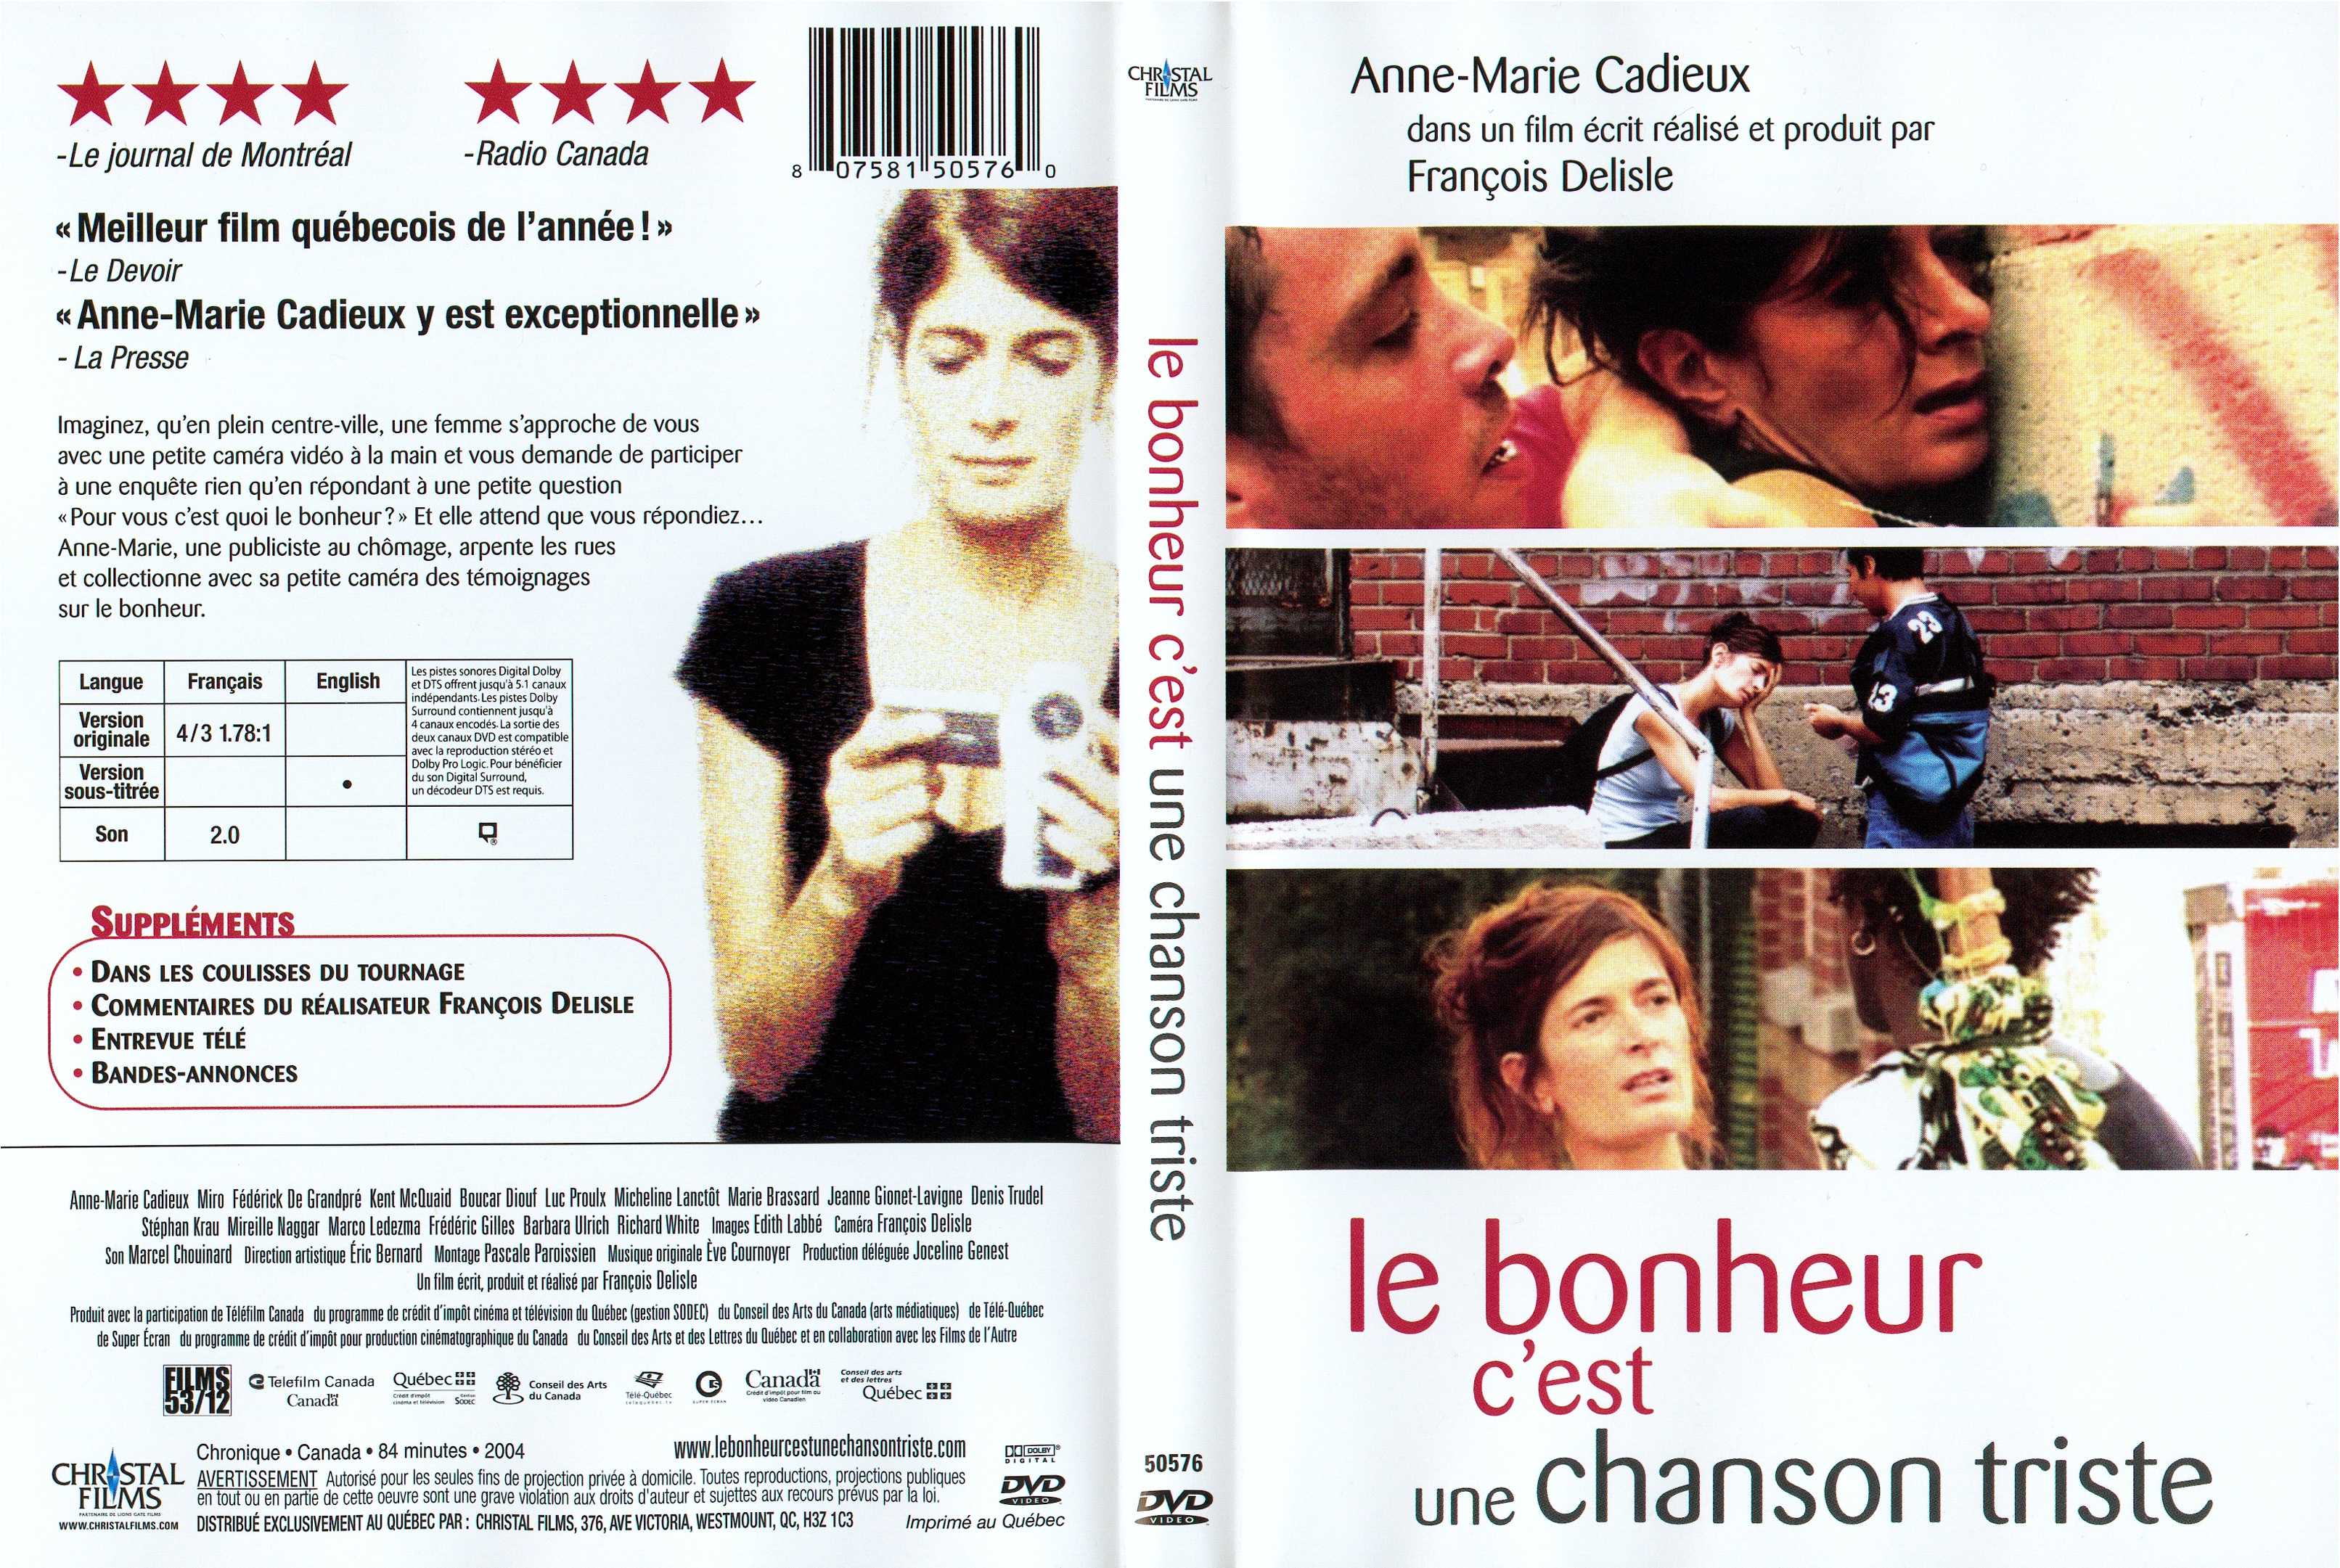 Jaquette DVD Le bonheur c